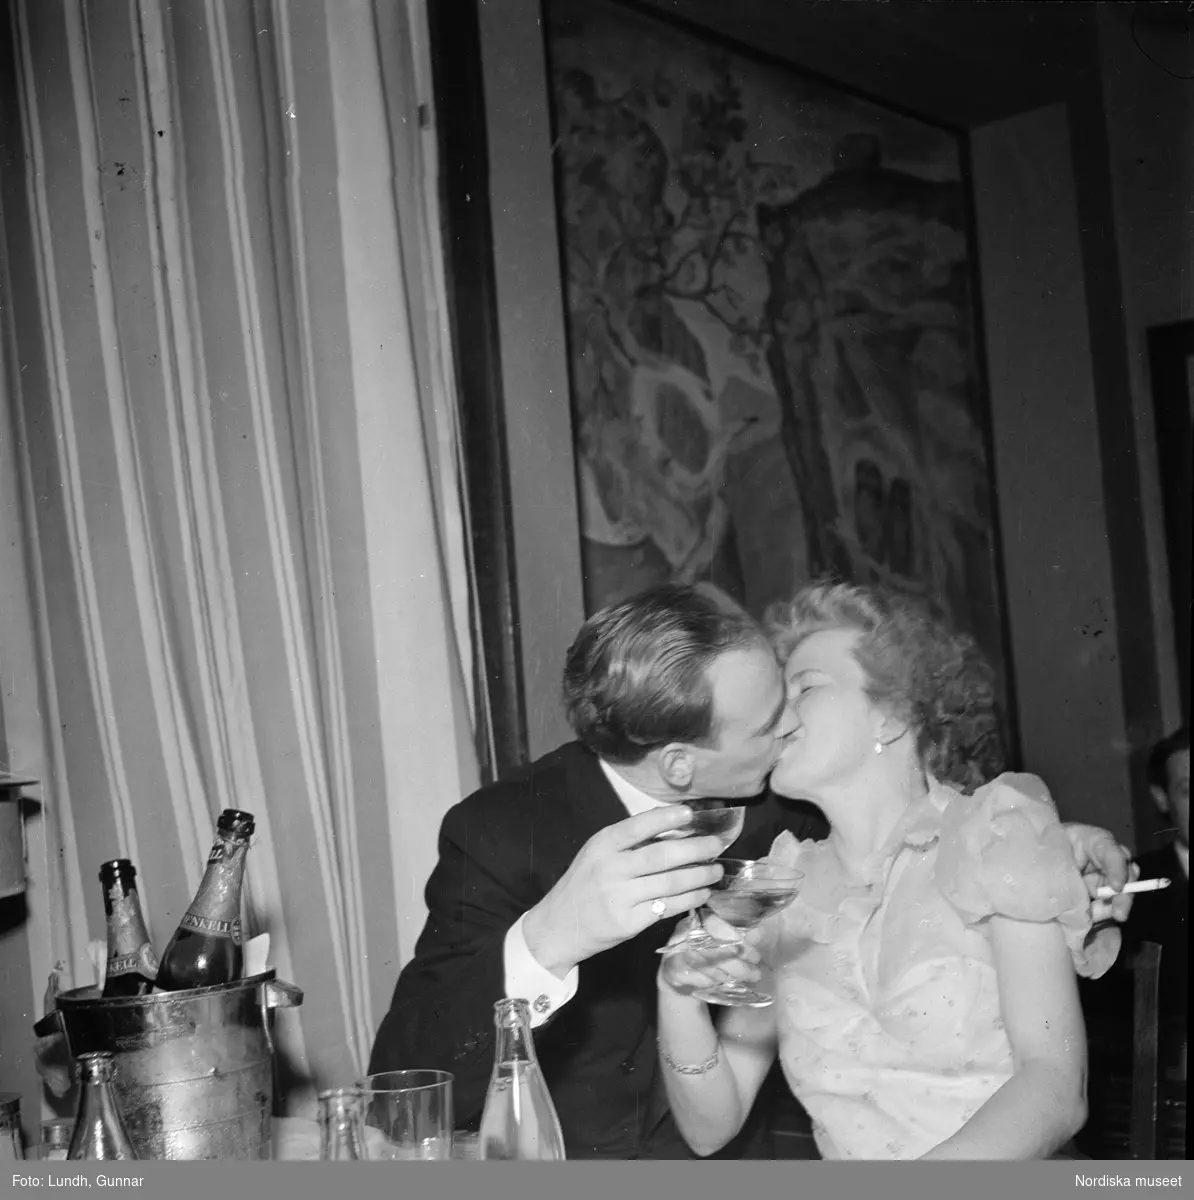 Nyårsfirande på Hedmans hotell, Hålland utanför Åre. Ett kyssande par sitter vid ett bord med champagneflaskor i en ishink.